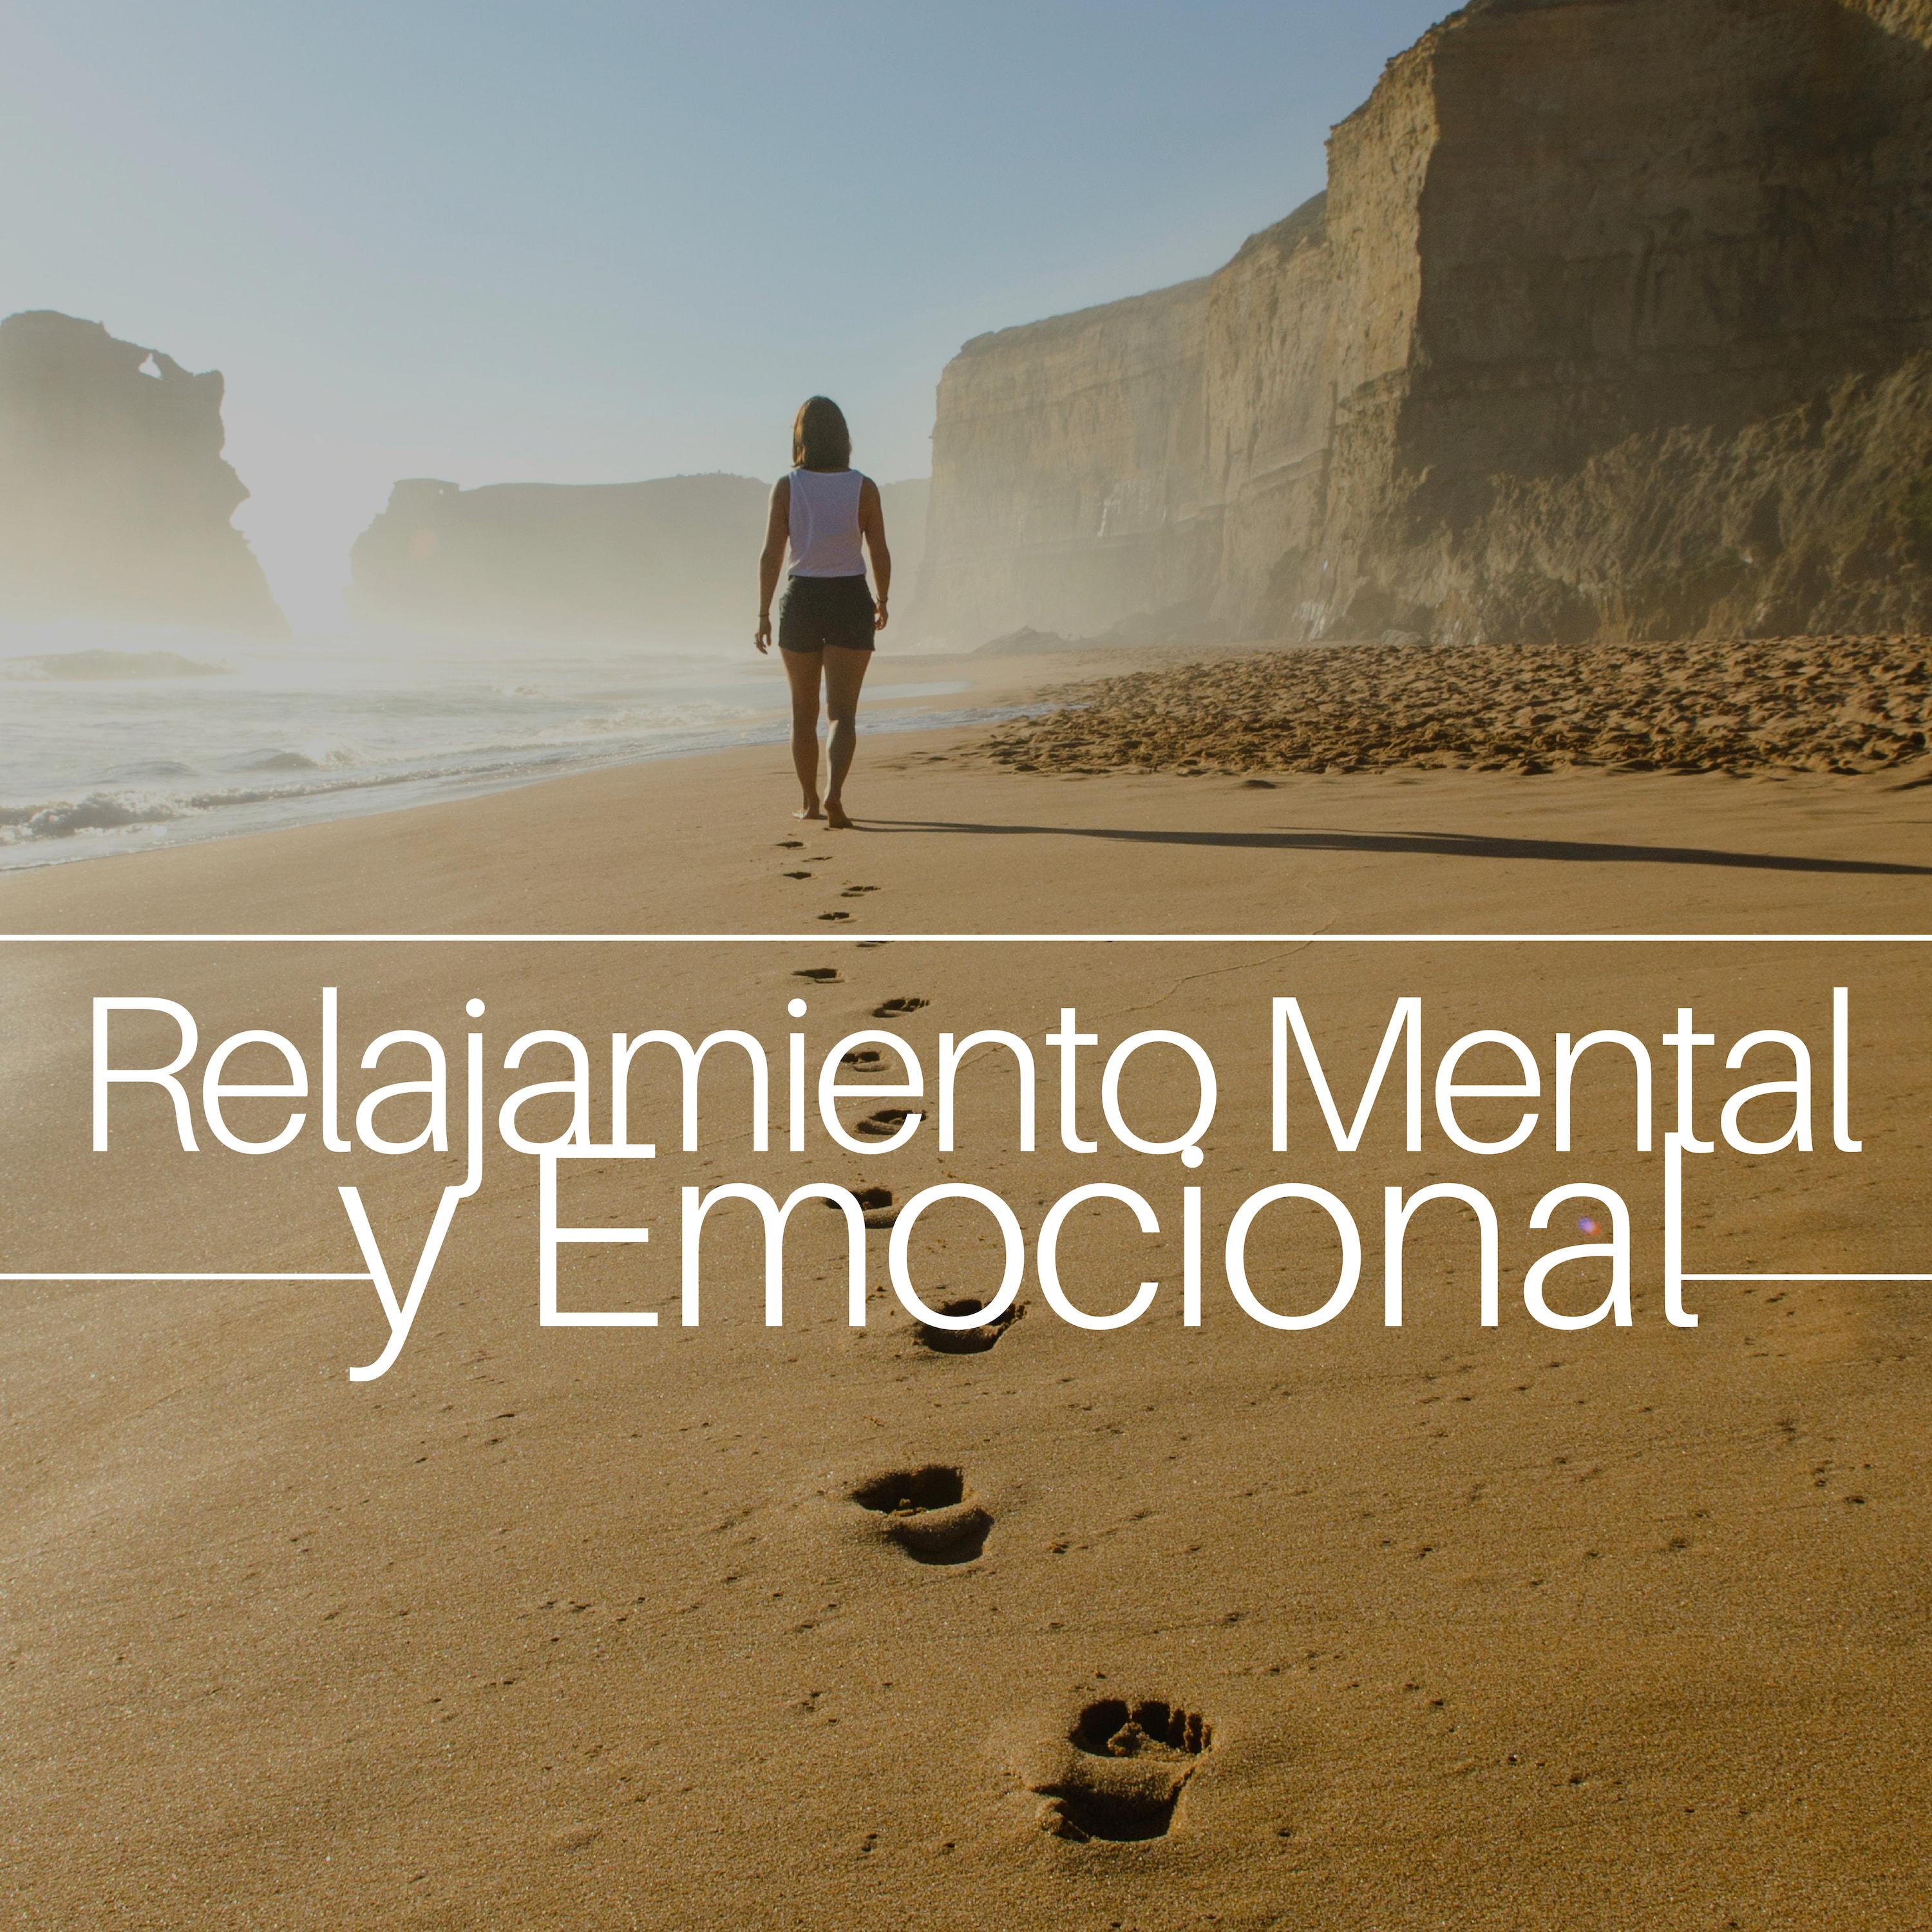 21 Relajamiento Mental y Emocional